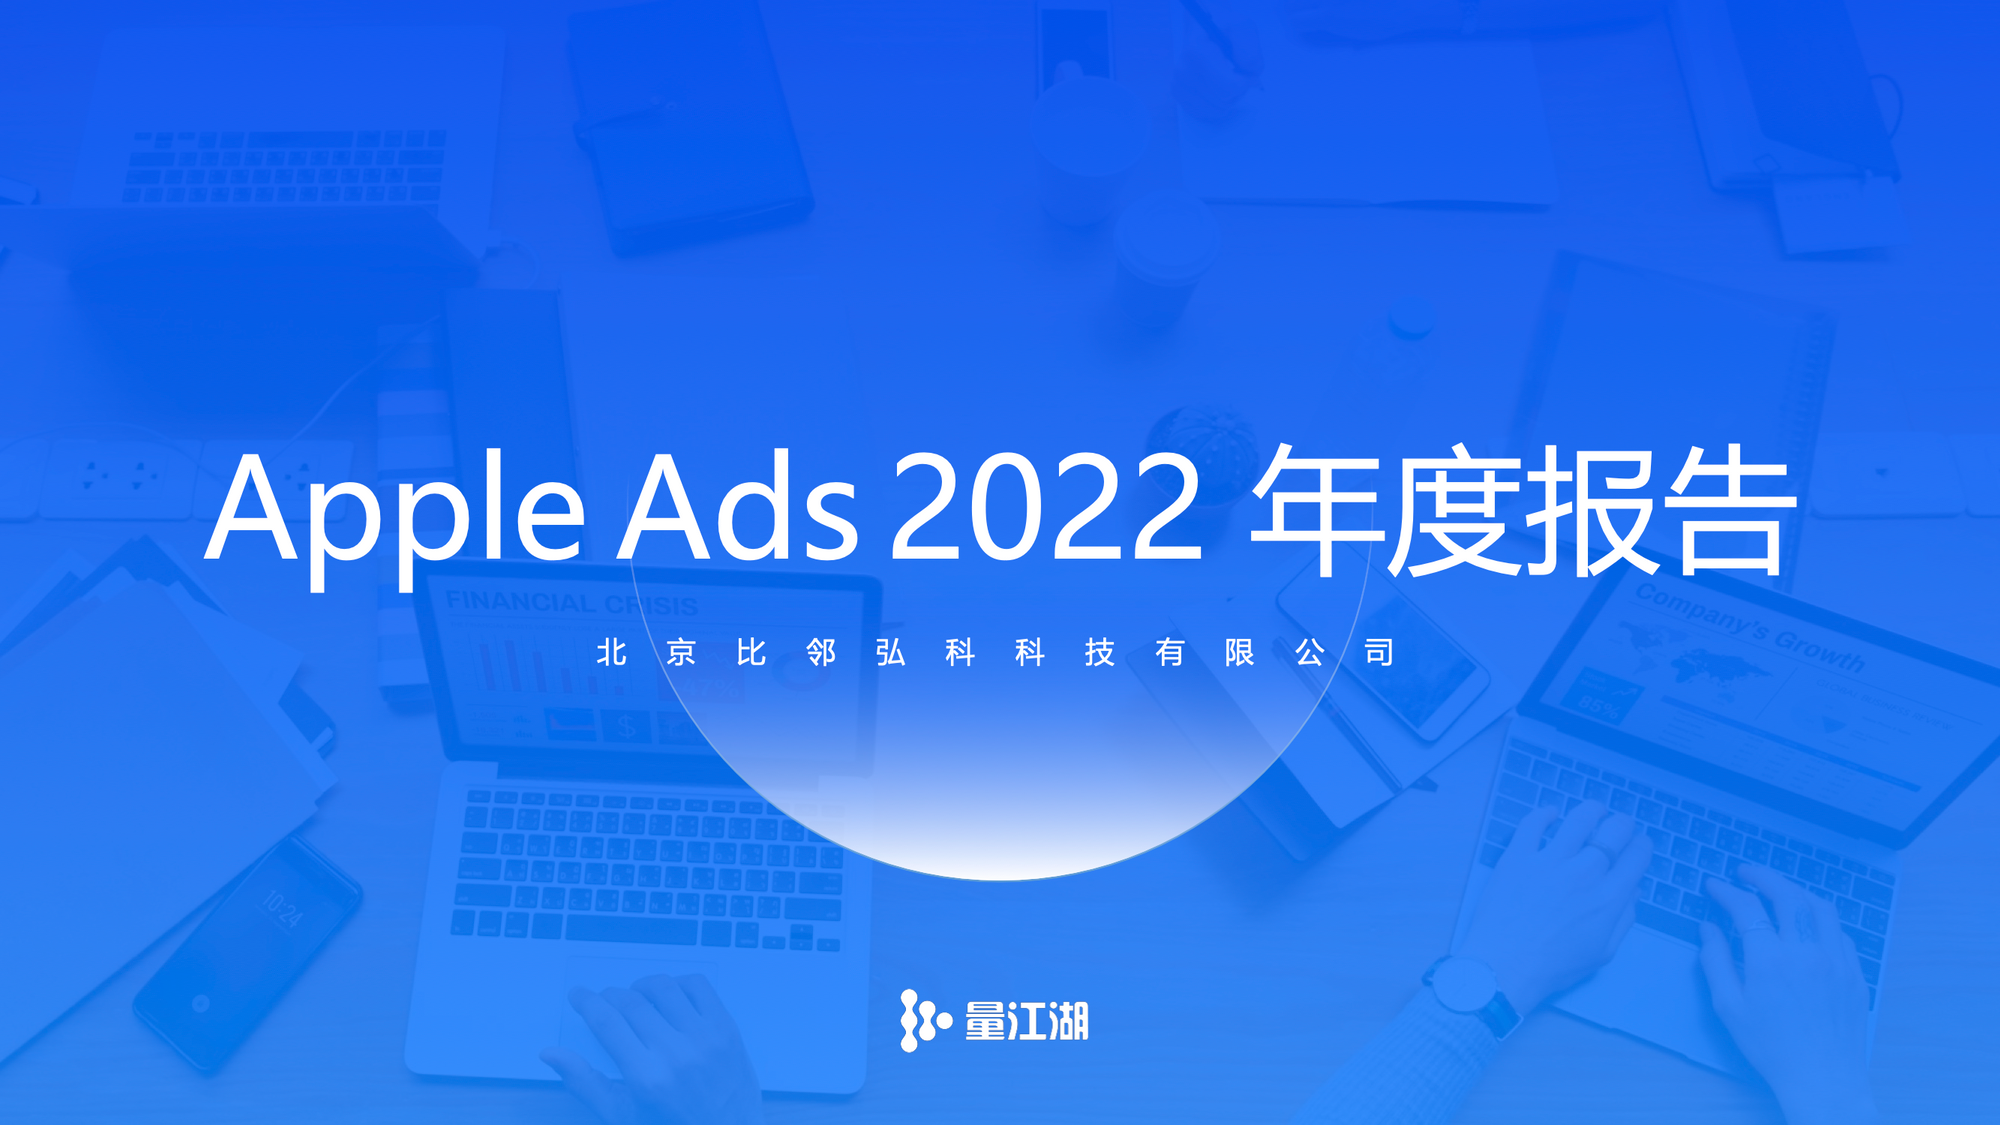 2022 年度 Apple Ads 数据报告正式发布